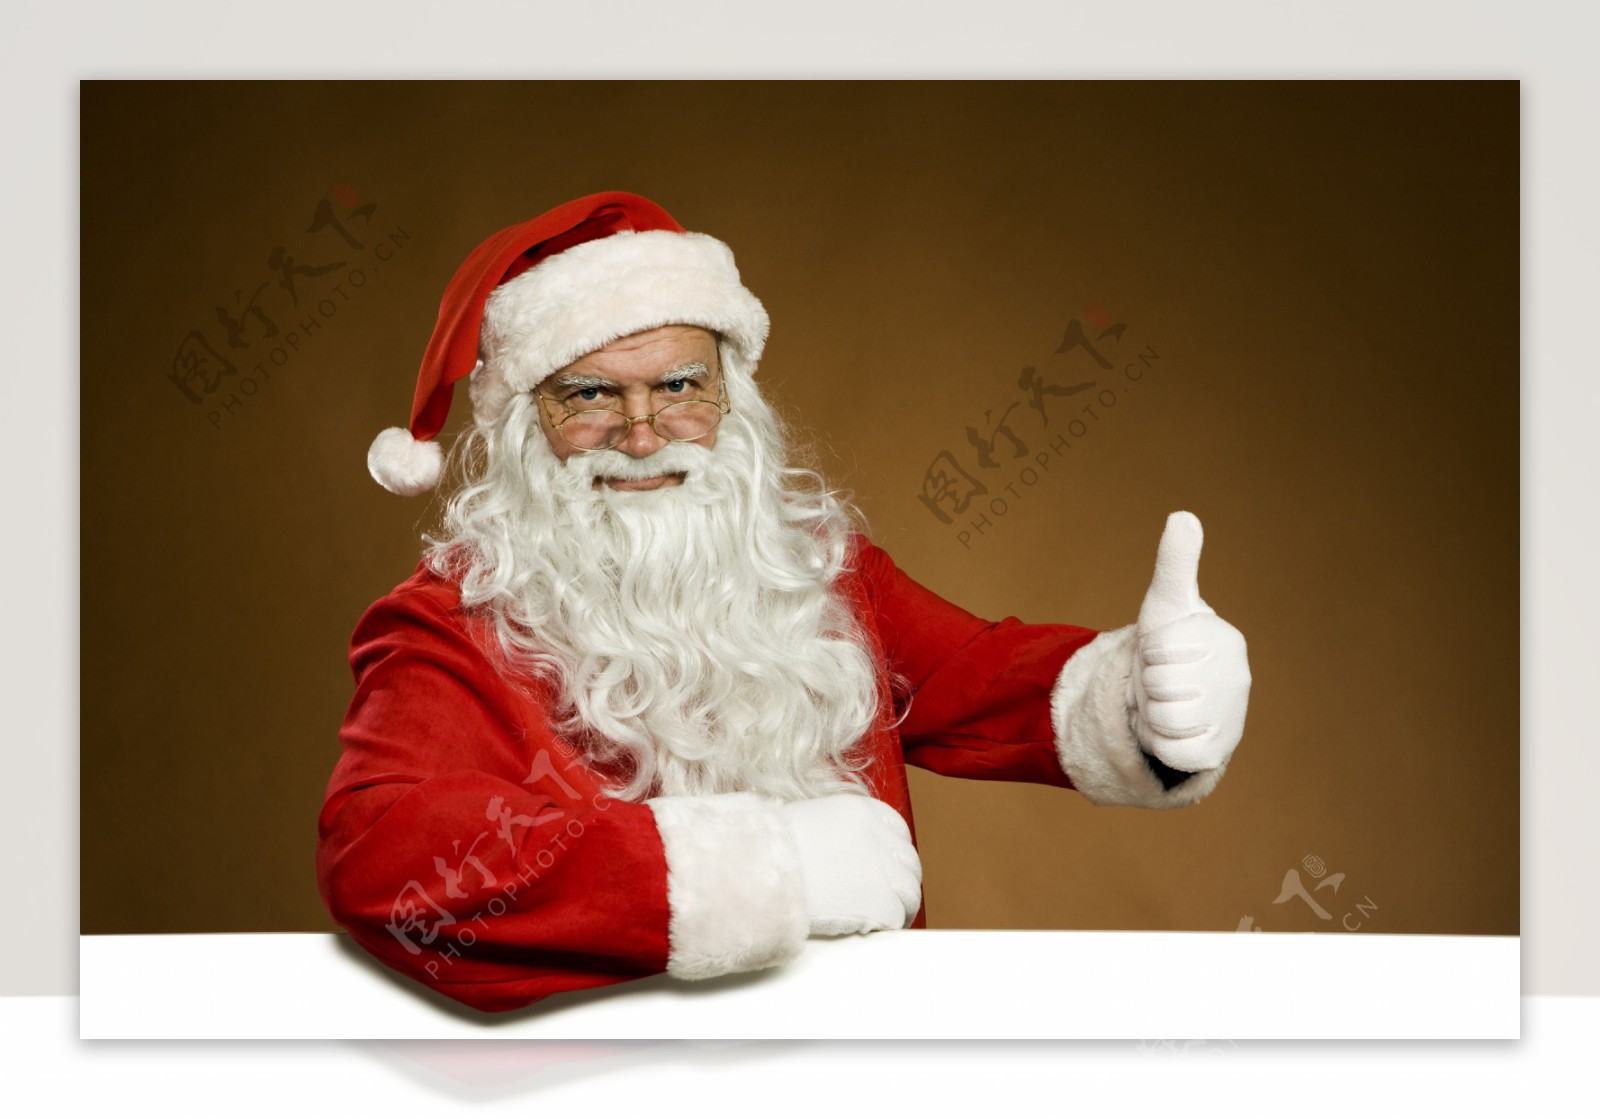 空白广告牌边竖起大拇指的圣诞老人图片